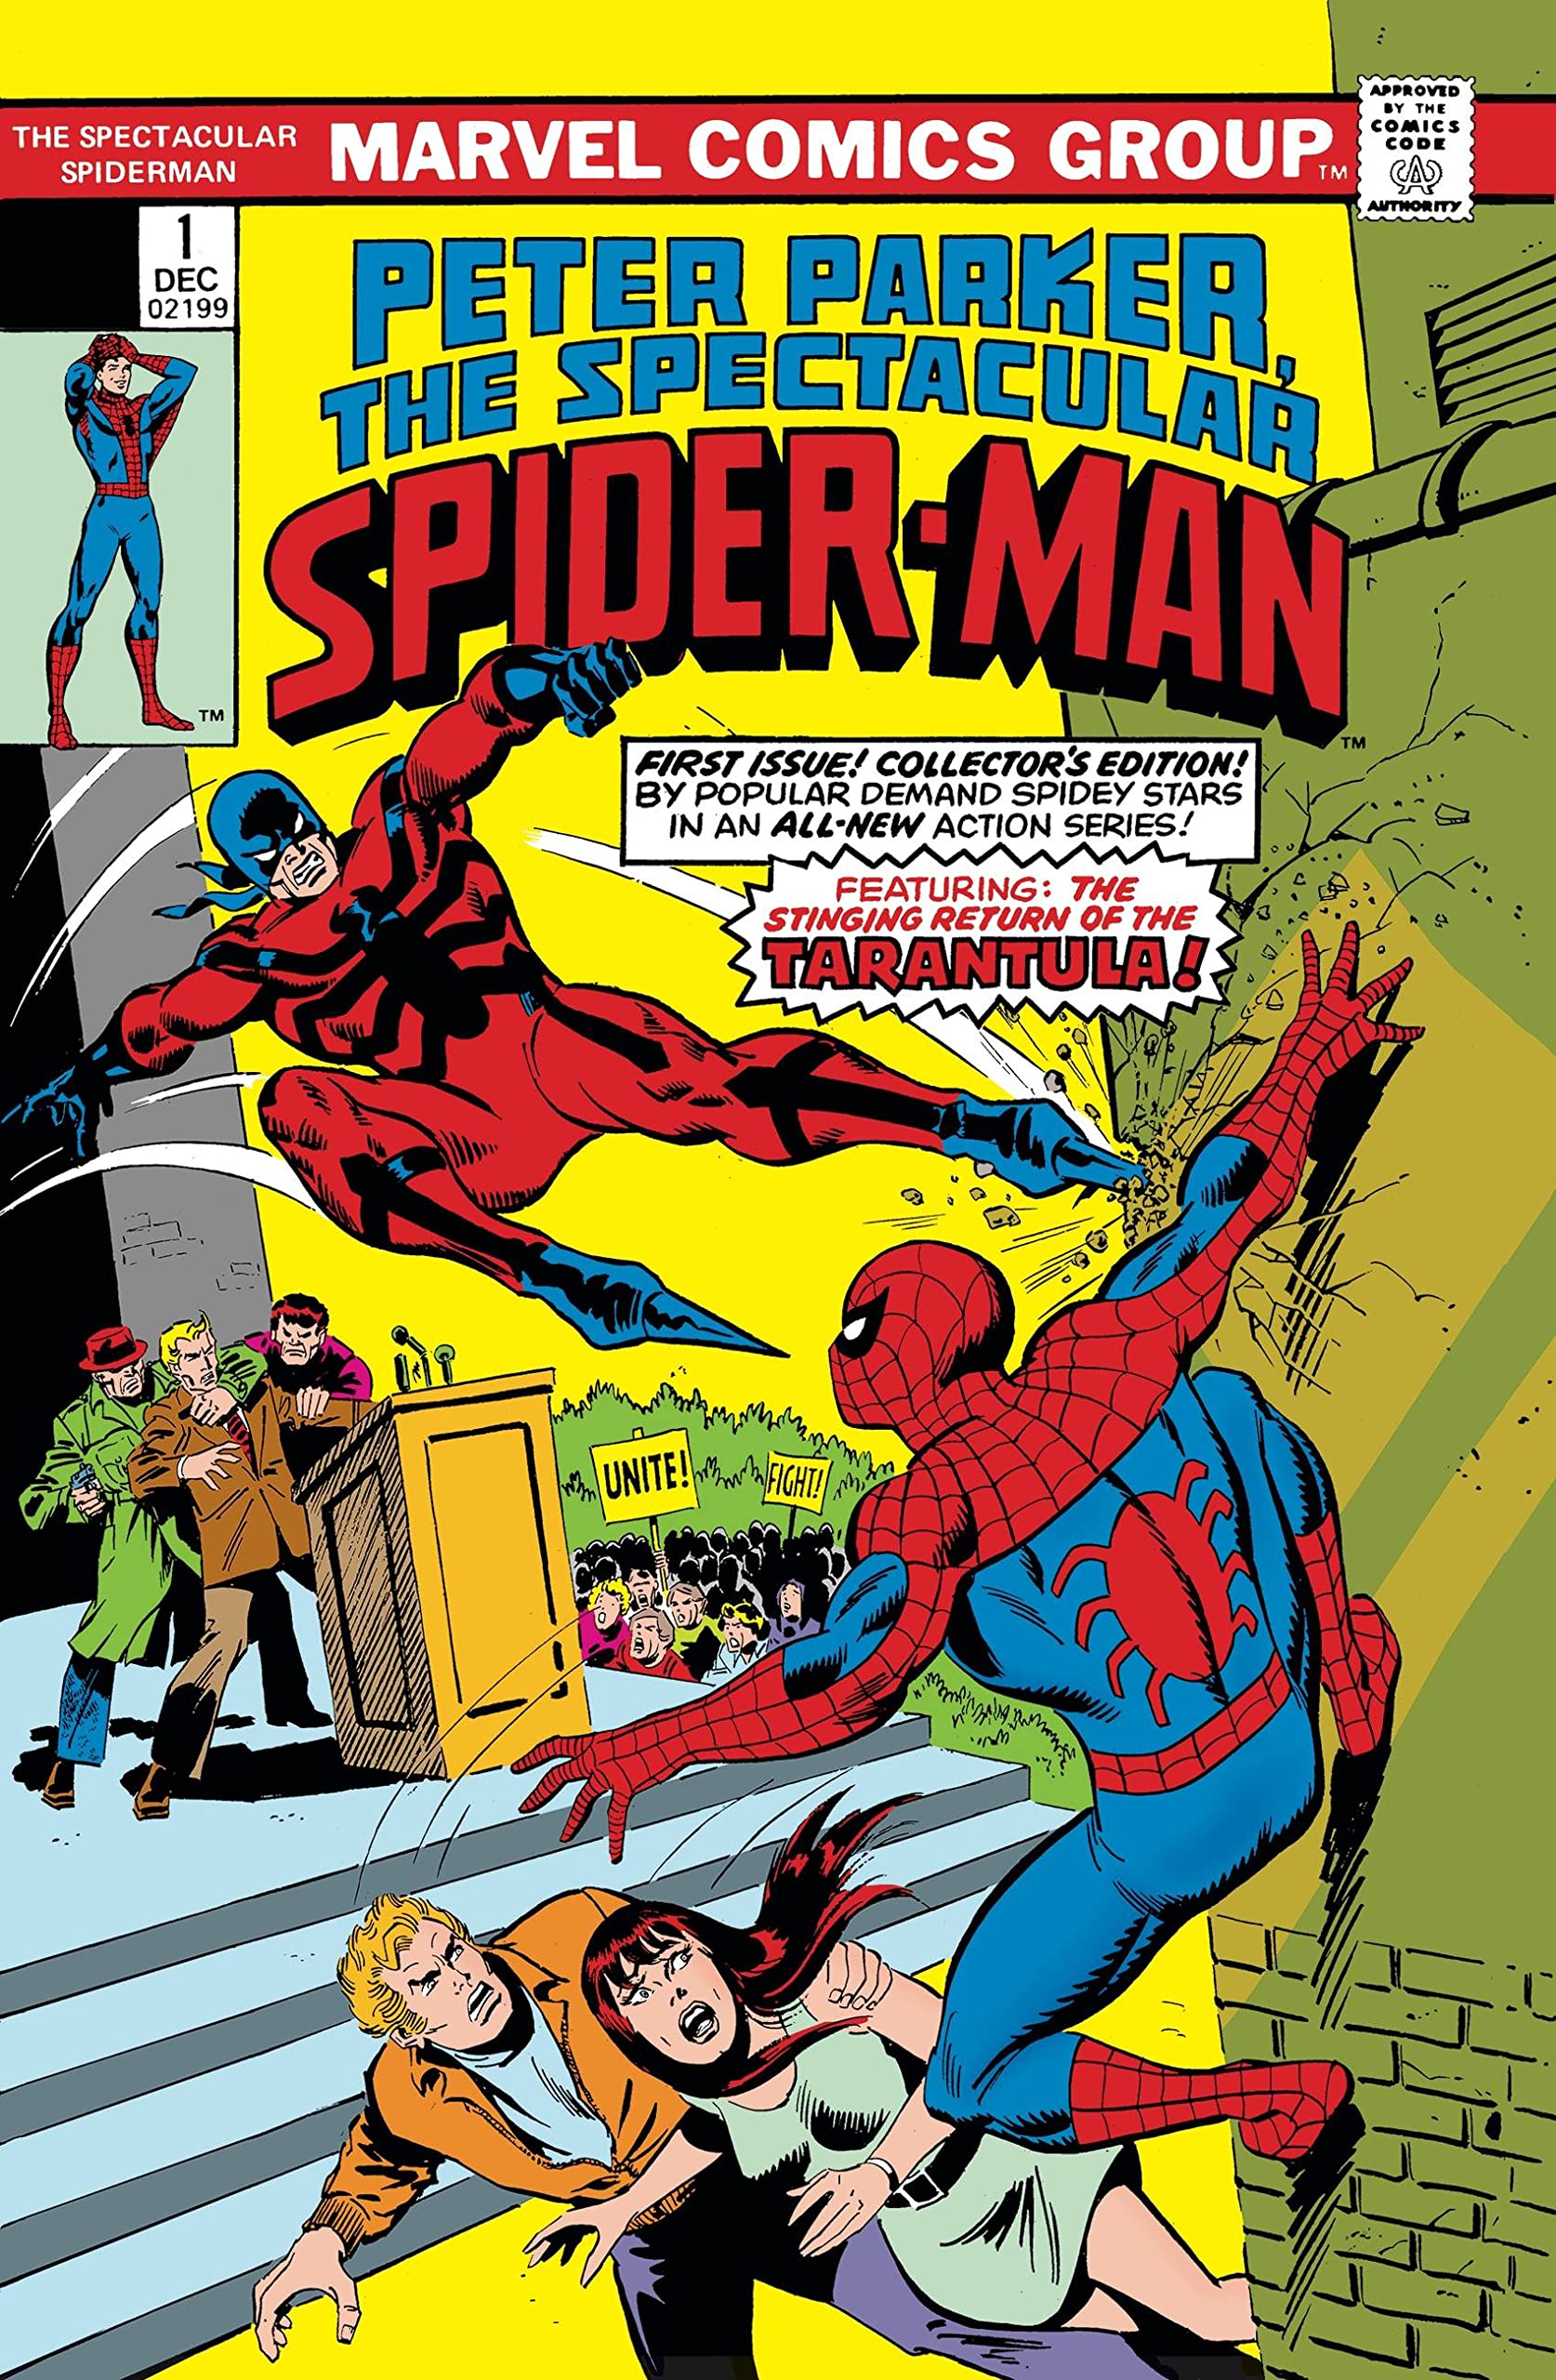 The Spectacular Spider-Man Omnibus Vol. 1 (Trade Paperback)